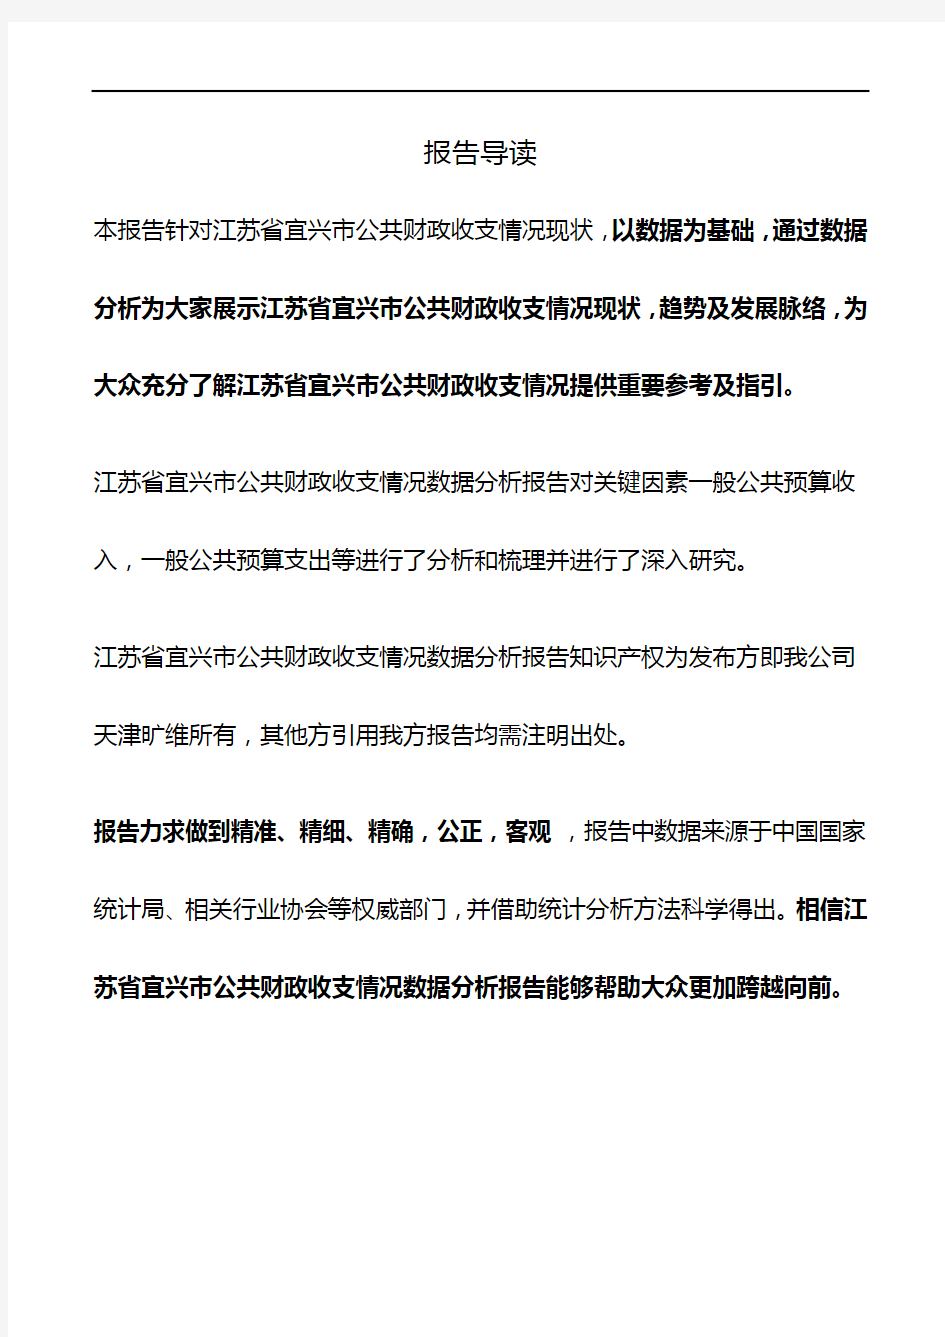 江苏省宜兴市公共财政收支情况3年数据分析报告2019版